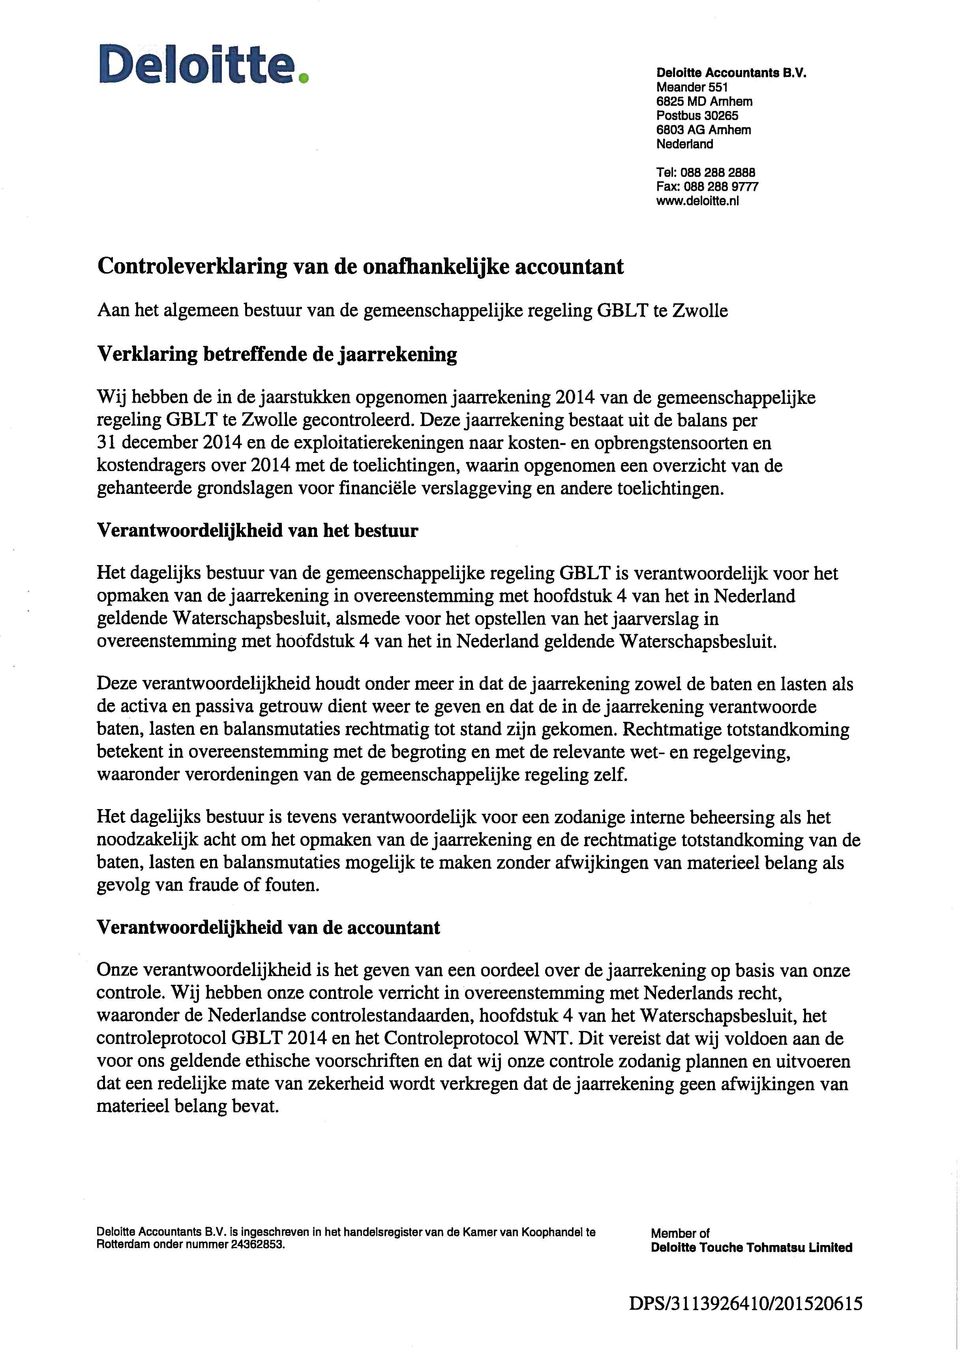 jaarstukken opgenomen jaarrekening 2014 van de gemeenschappelijke regeling GBLT te Zwolle gecontroleerd.